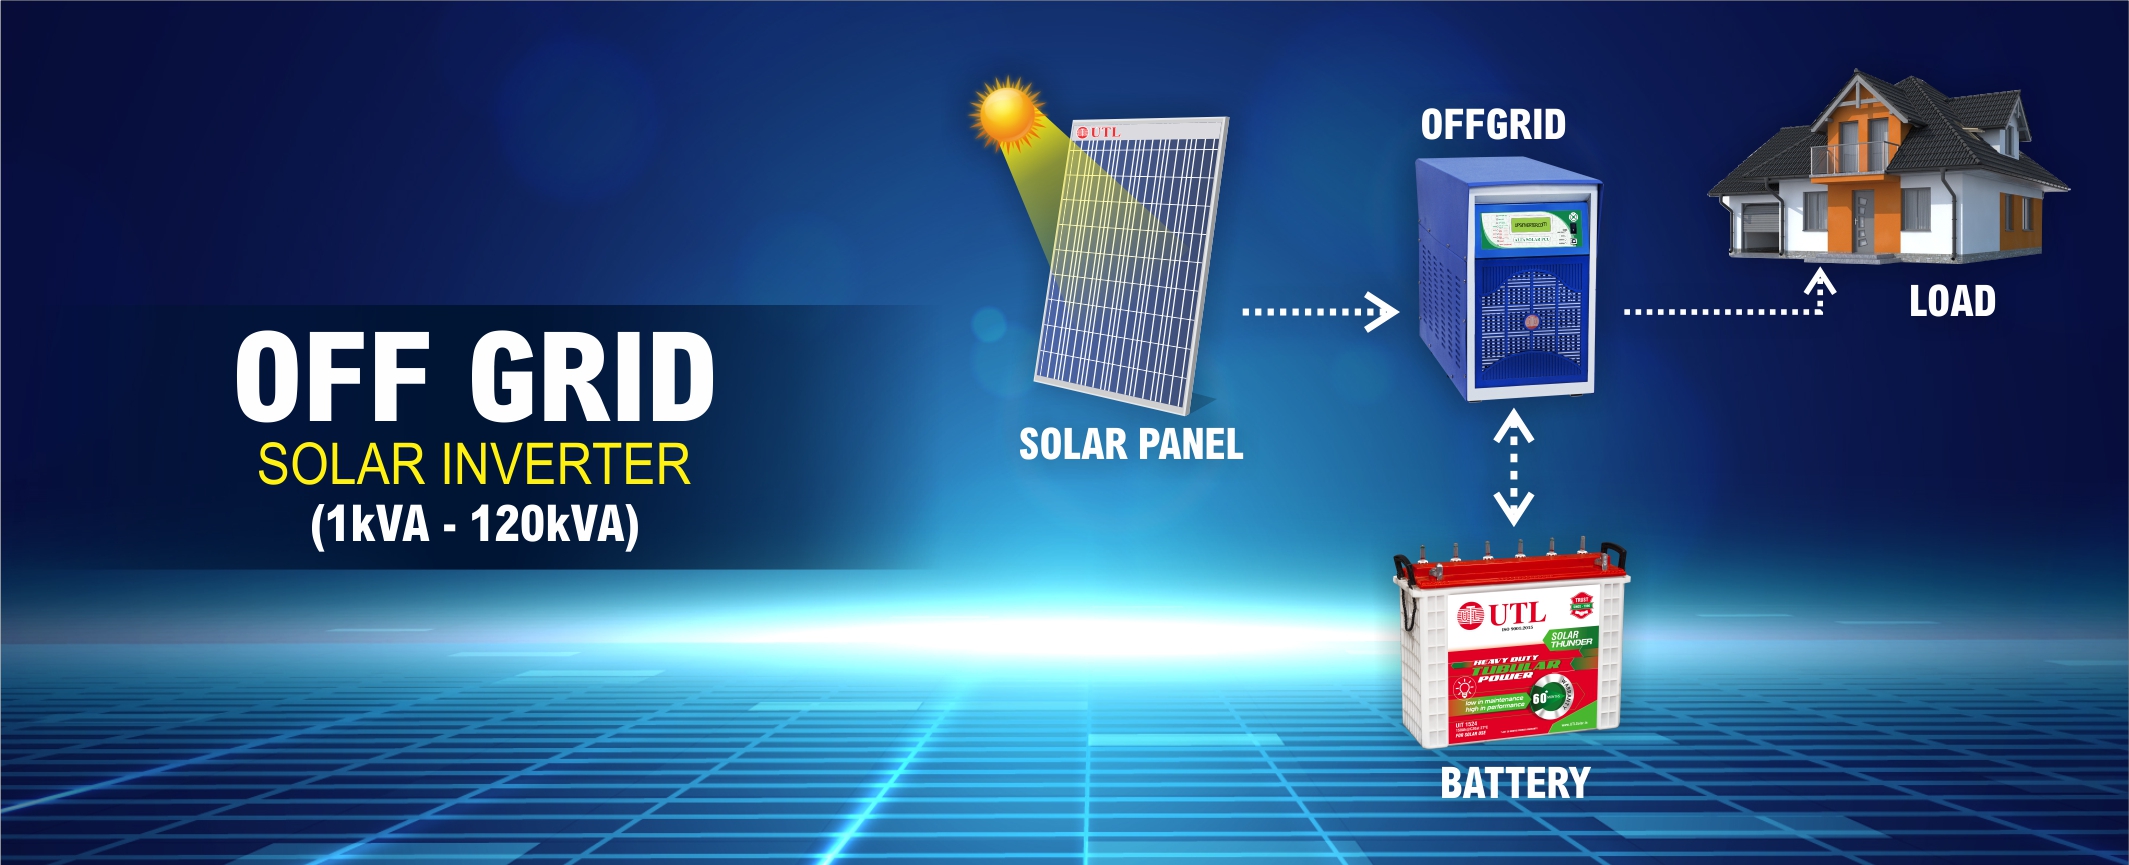 UTL Offgrid Solar Inverter